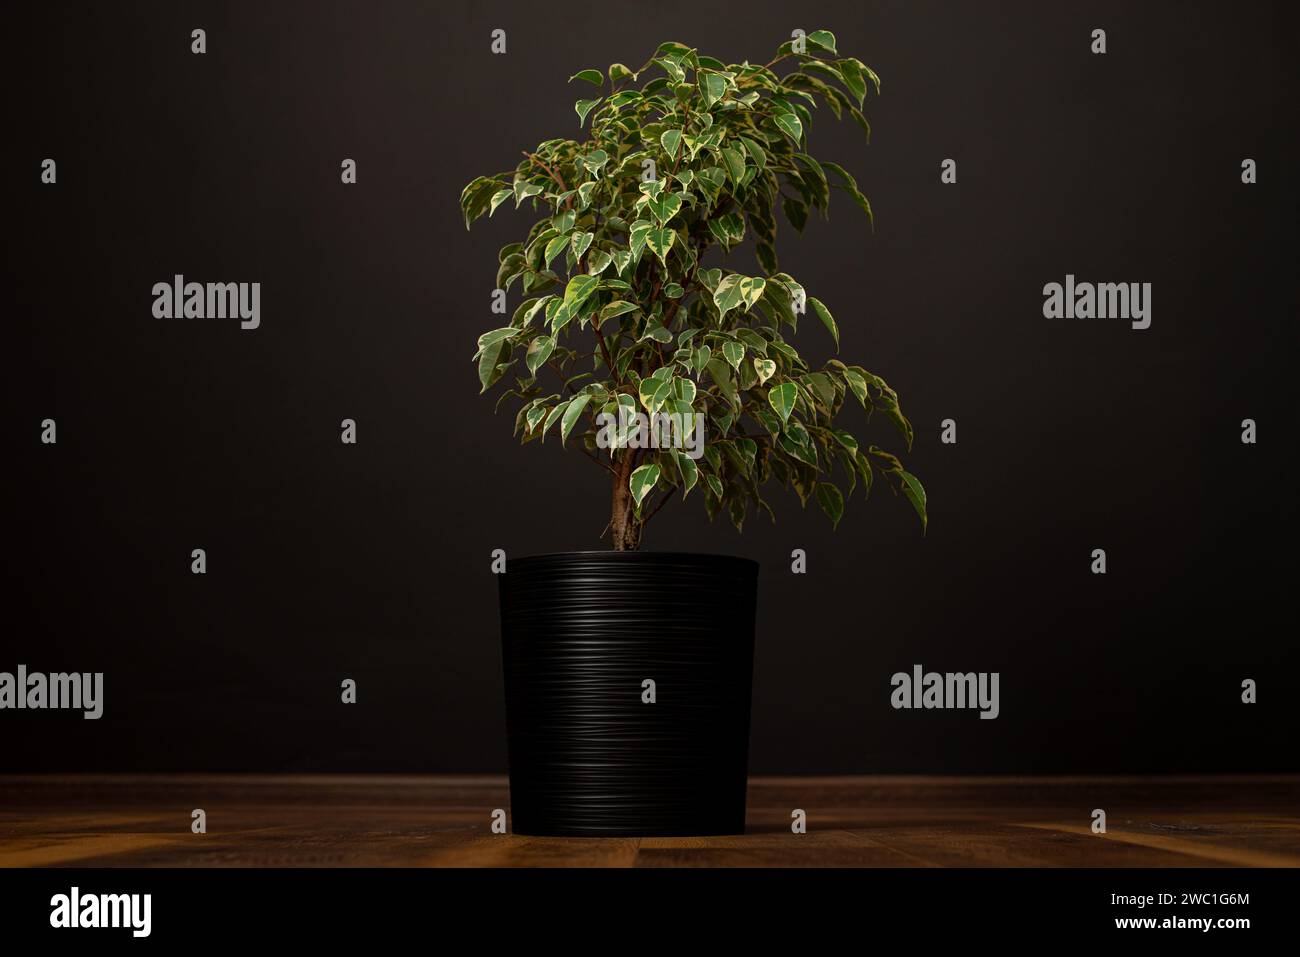 Schöne üppige Zimmerpflanze Ficus benjamina, allgemein bekannt als Trauerfeige, benjamin-Feige oder Ficus-Baum wächst in modernen schwarzen Wohnräumen. Stockfoto